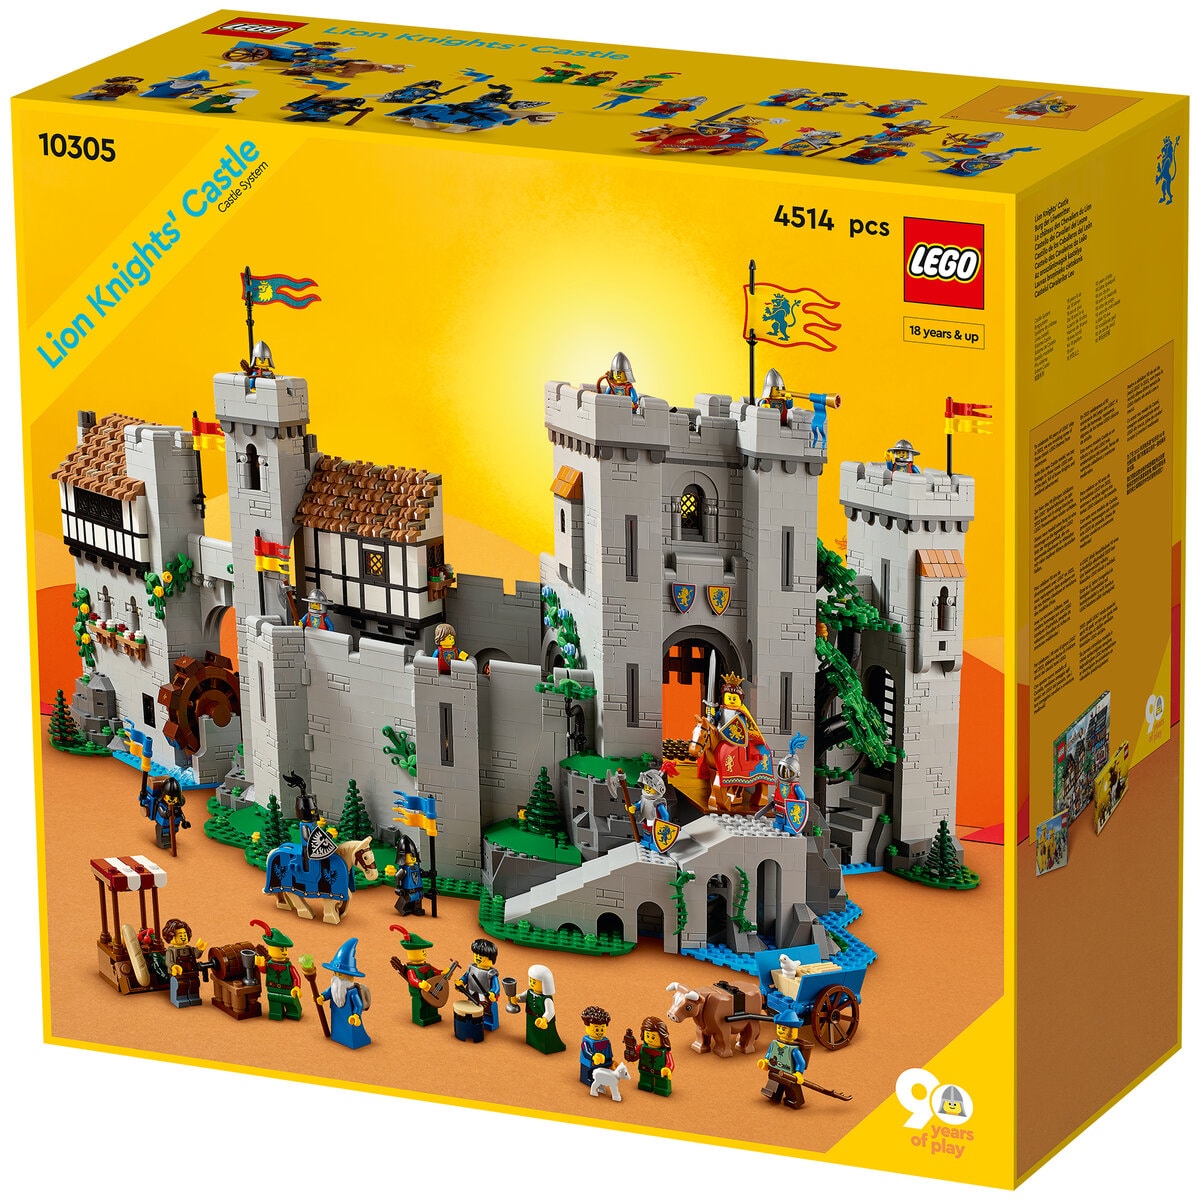 LEGO CON 2022 : Nouveauté LEGO 10305 Lion Knights' Castle, l